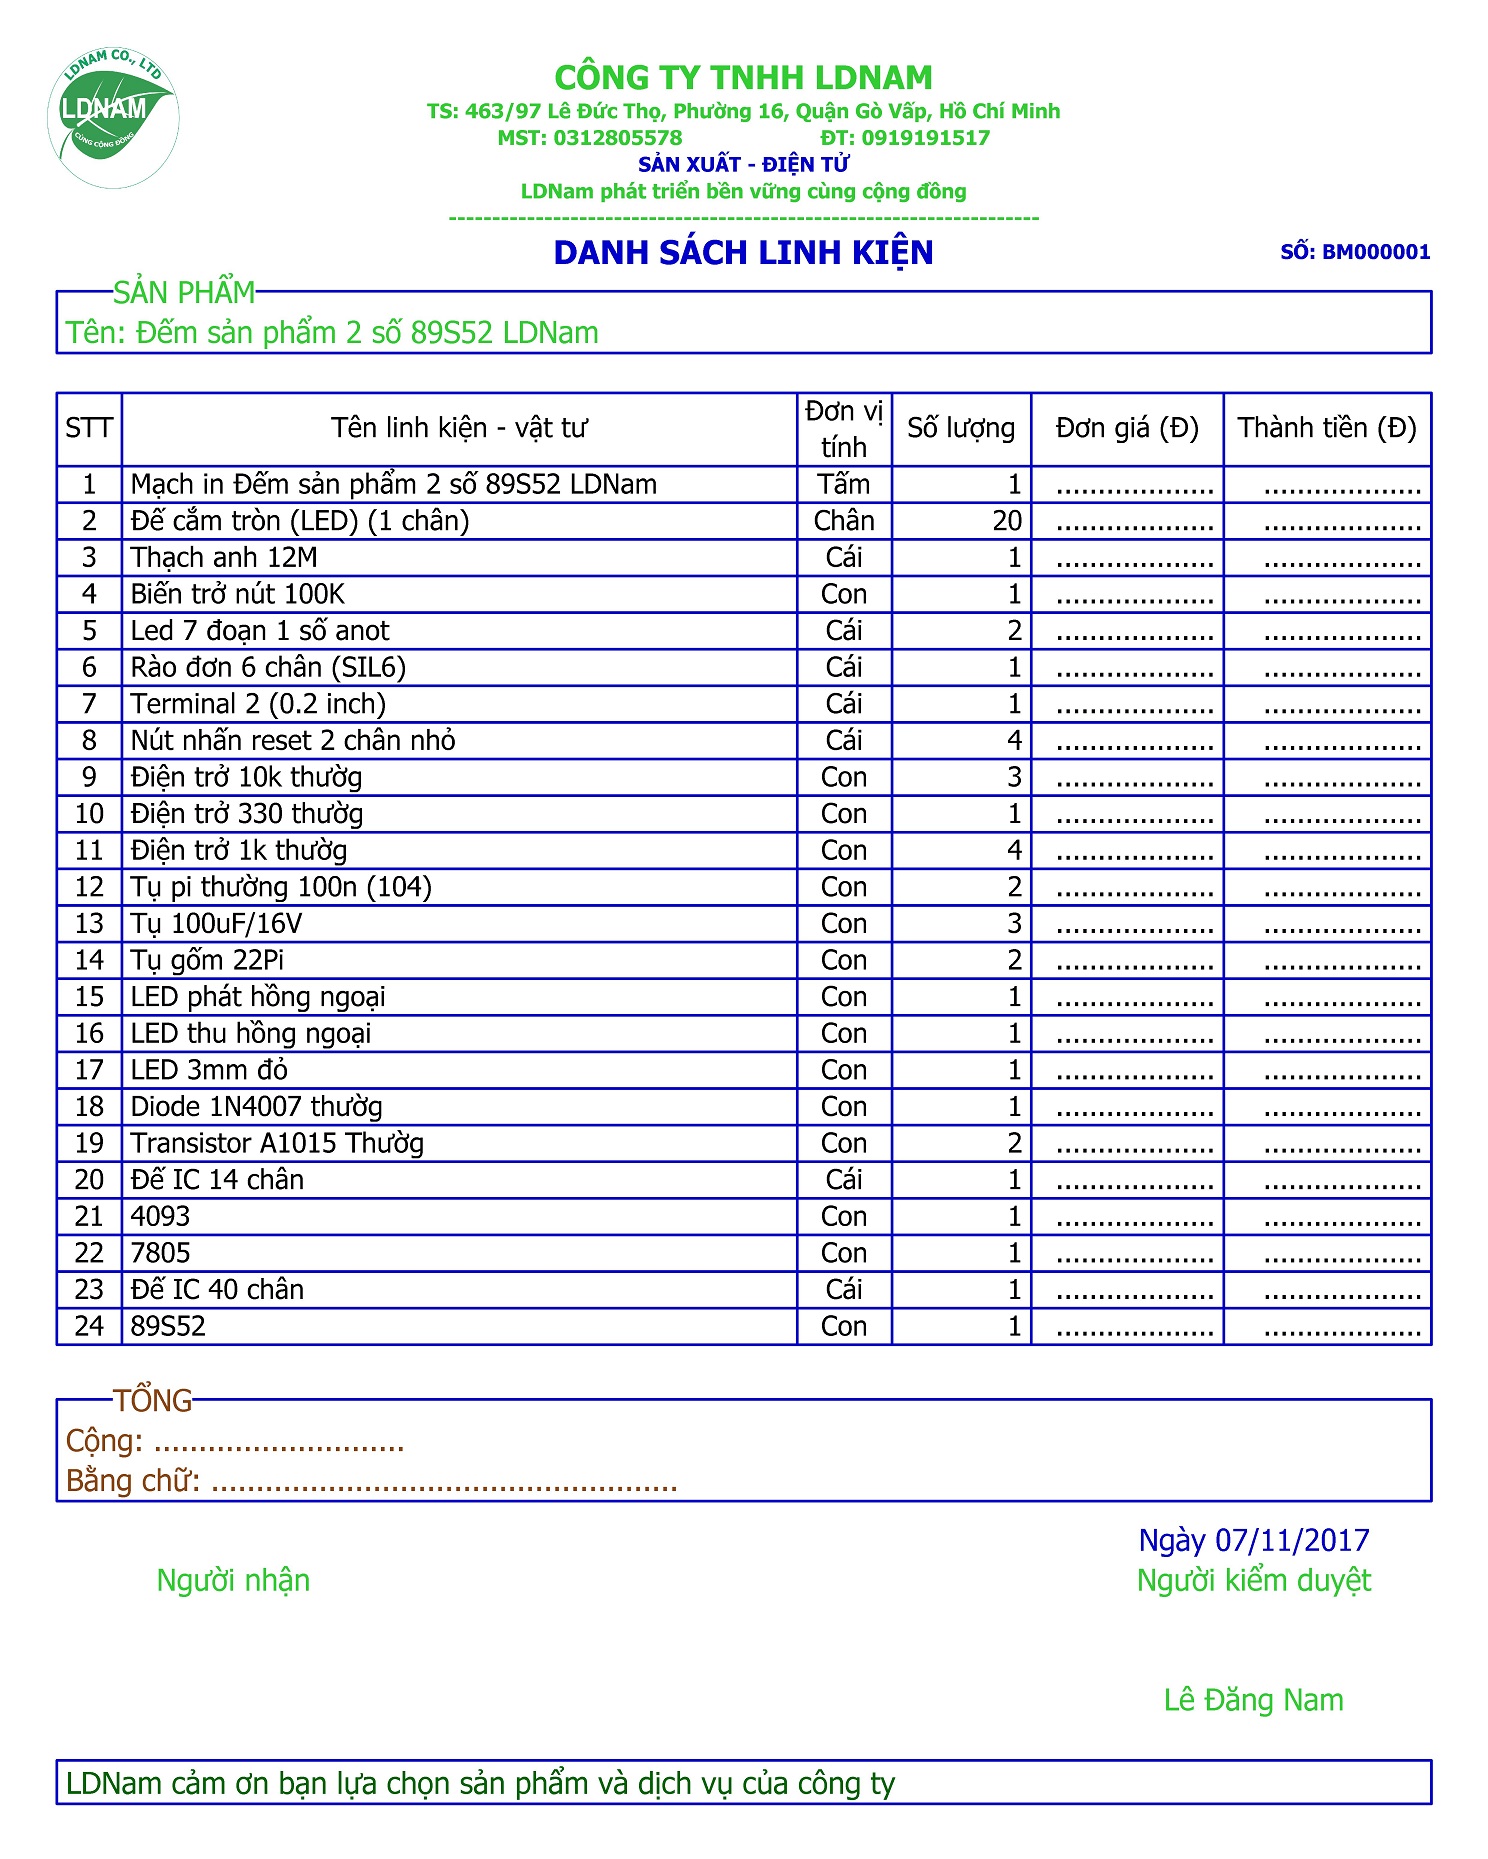 Danh sách linh kiện mạch đếm sản phẩm 2 số 89S52 LDNam